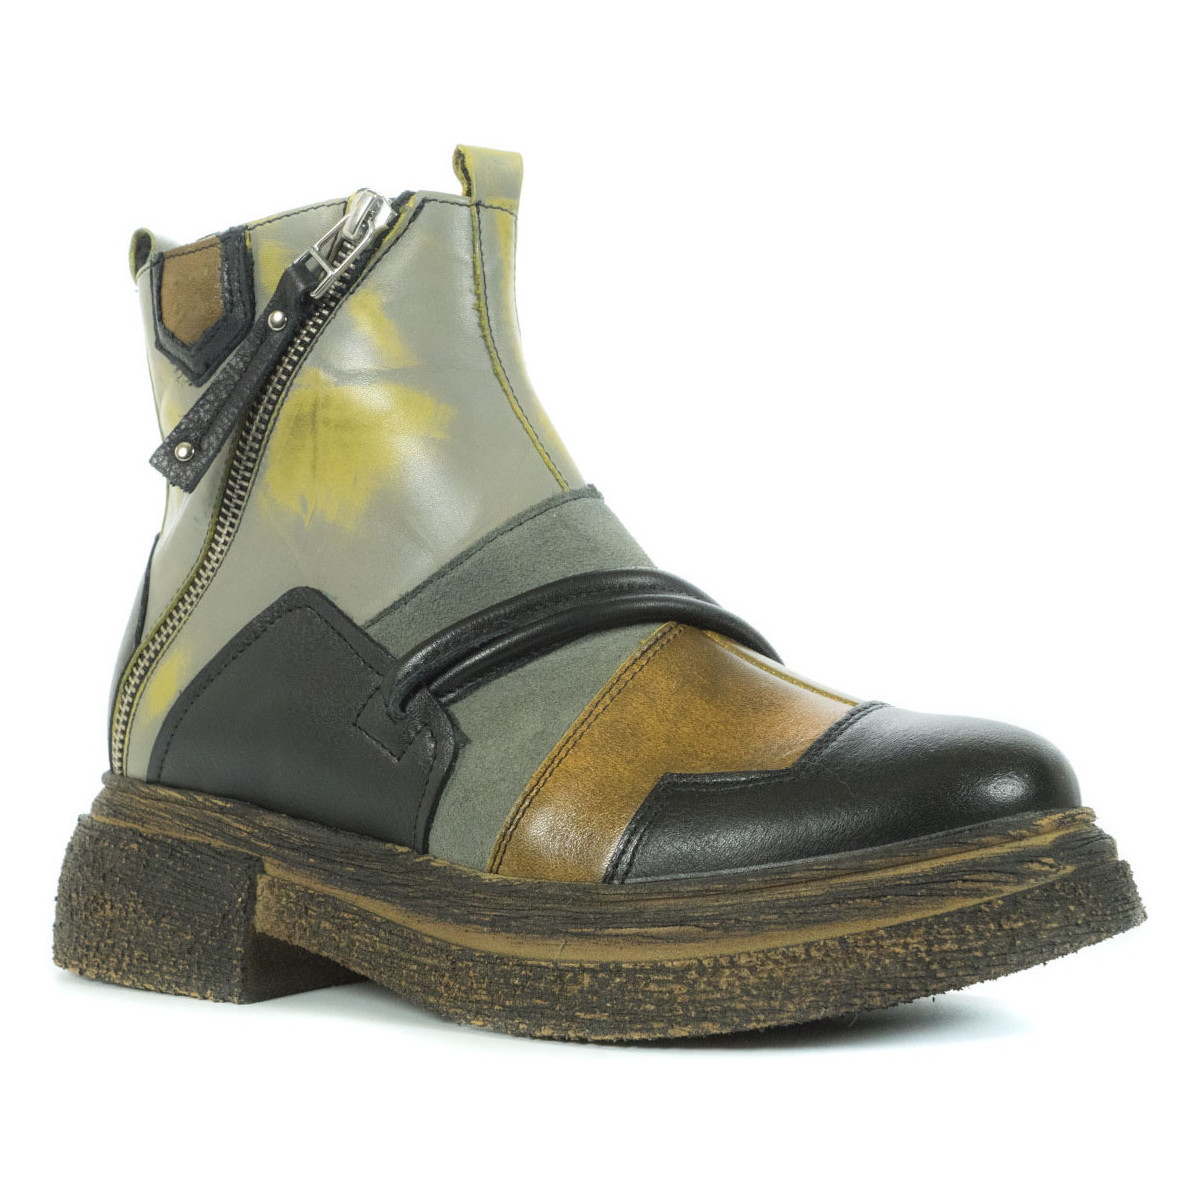 Chaussures Femme Boots Maciejka 05580-03 Noir